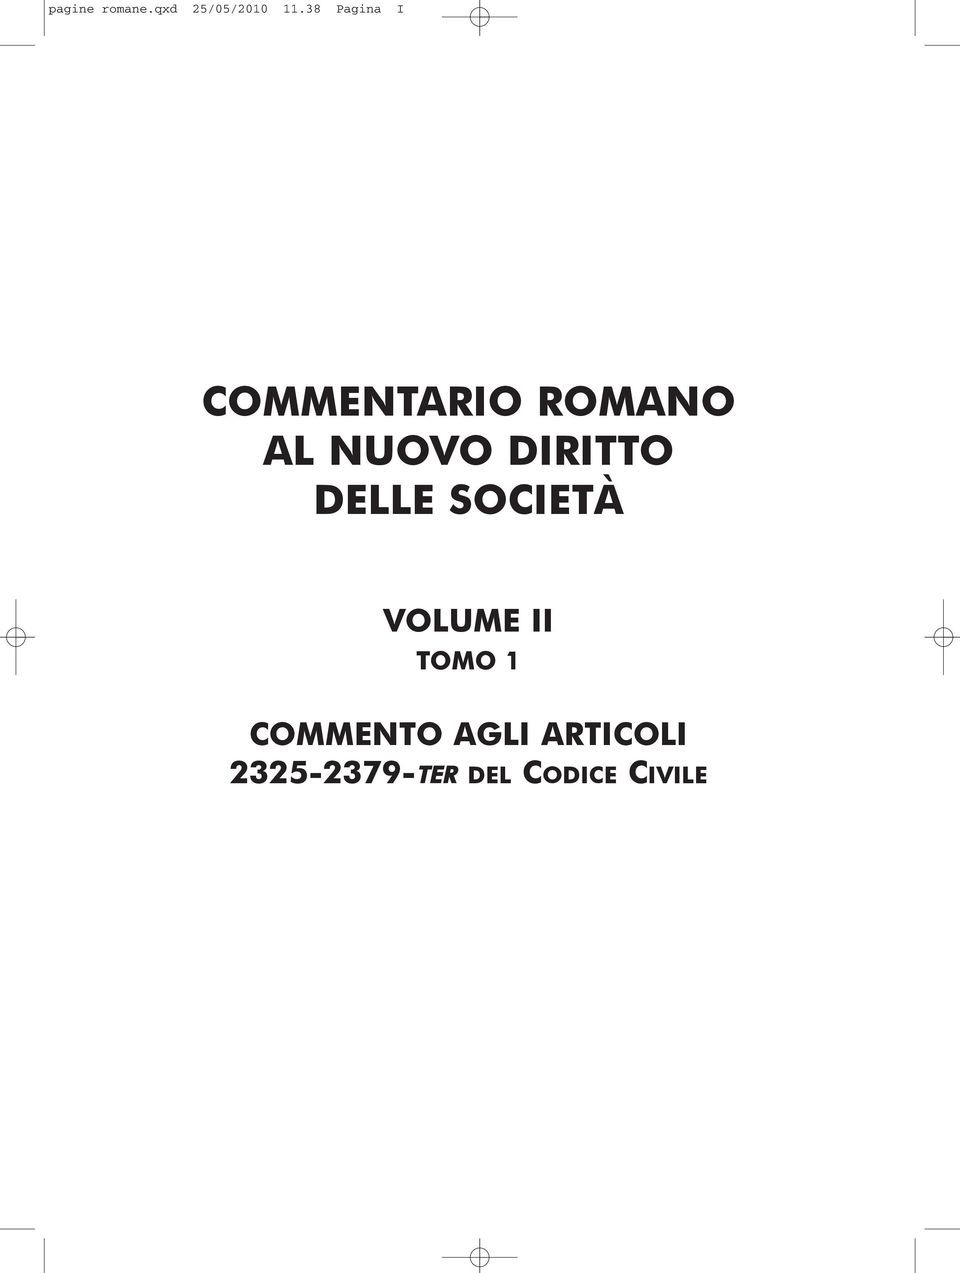 DIRITTO DELLE SOCIETÀ VOLUME II TOMO 1